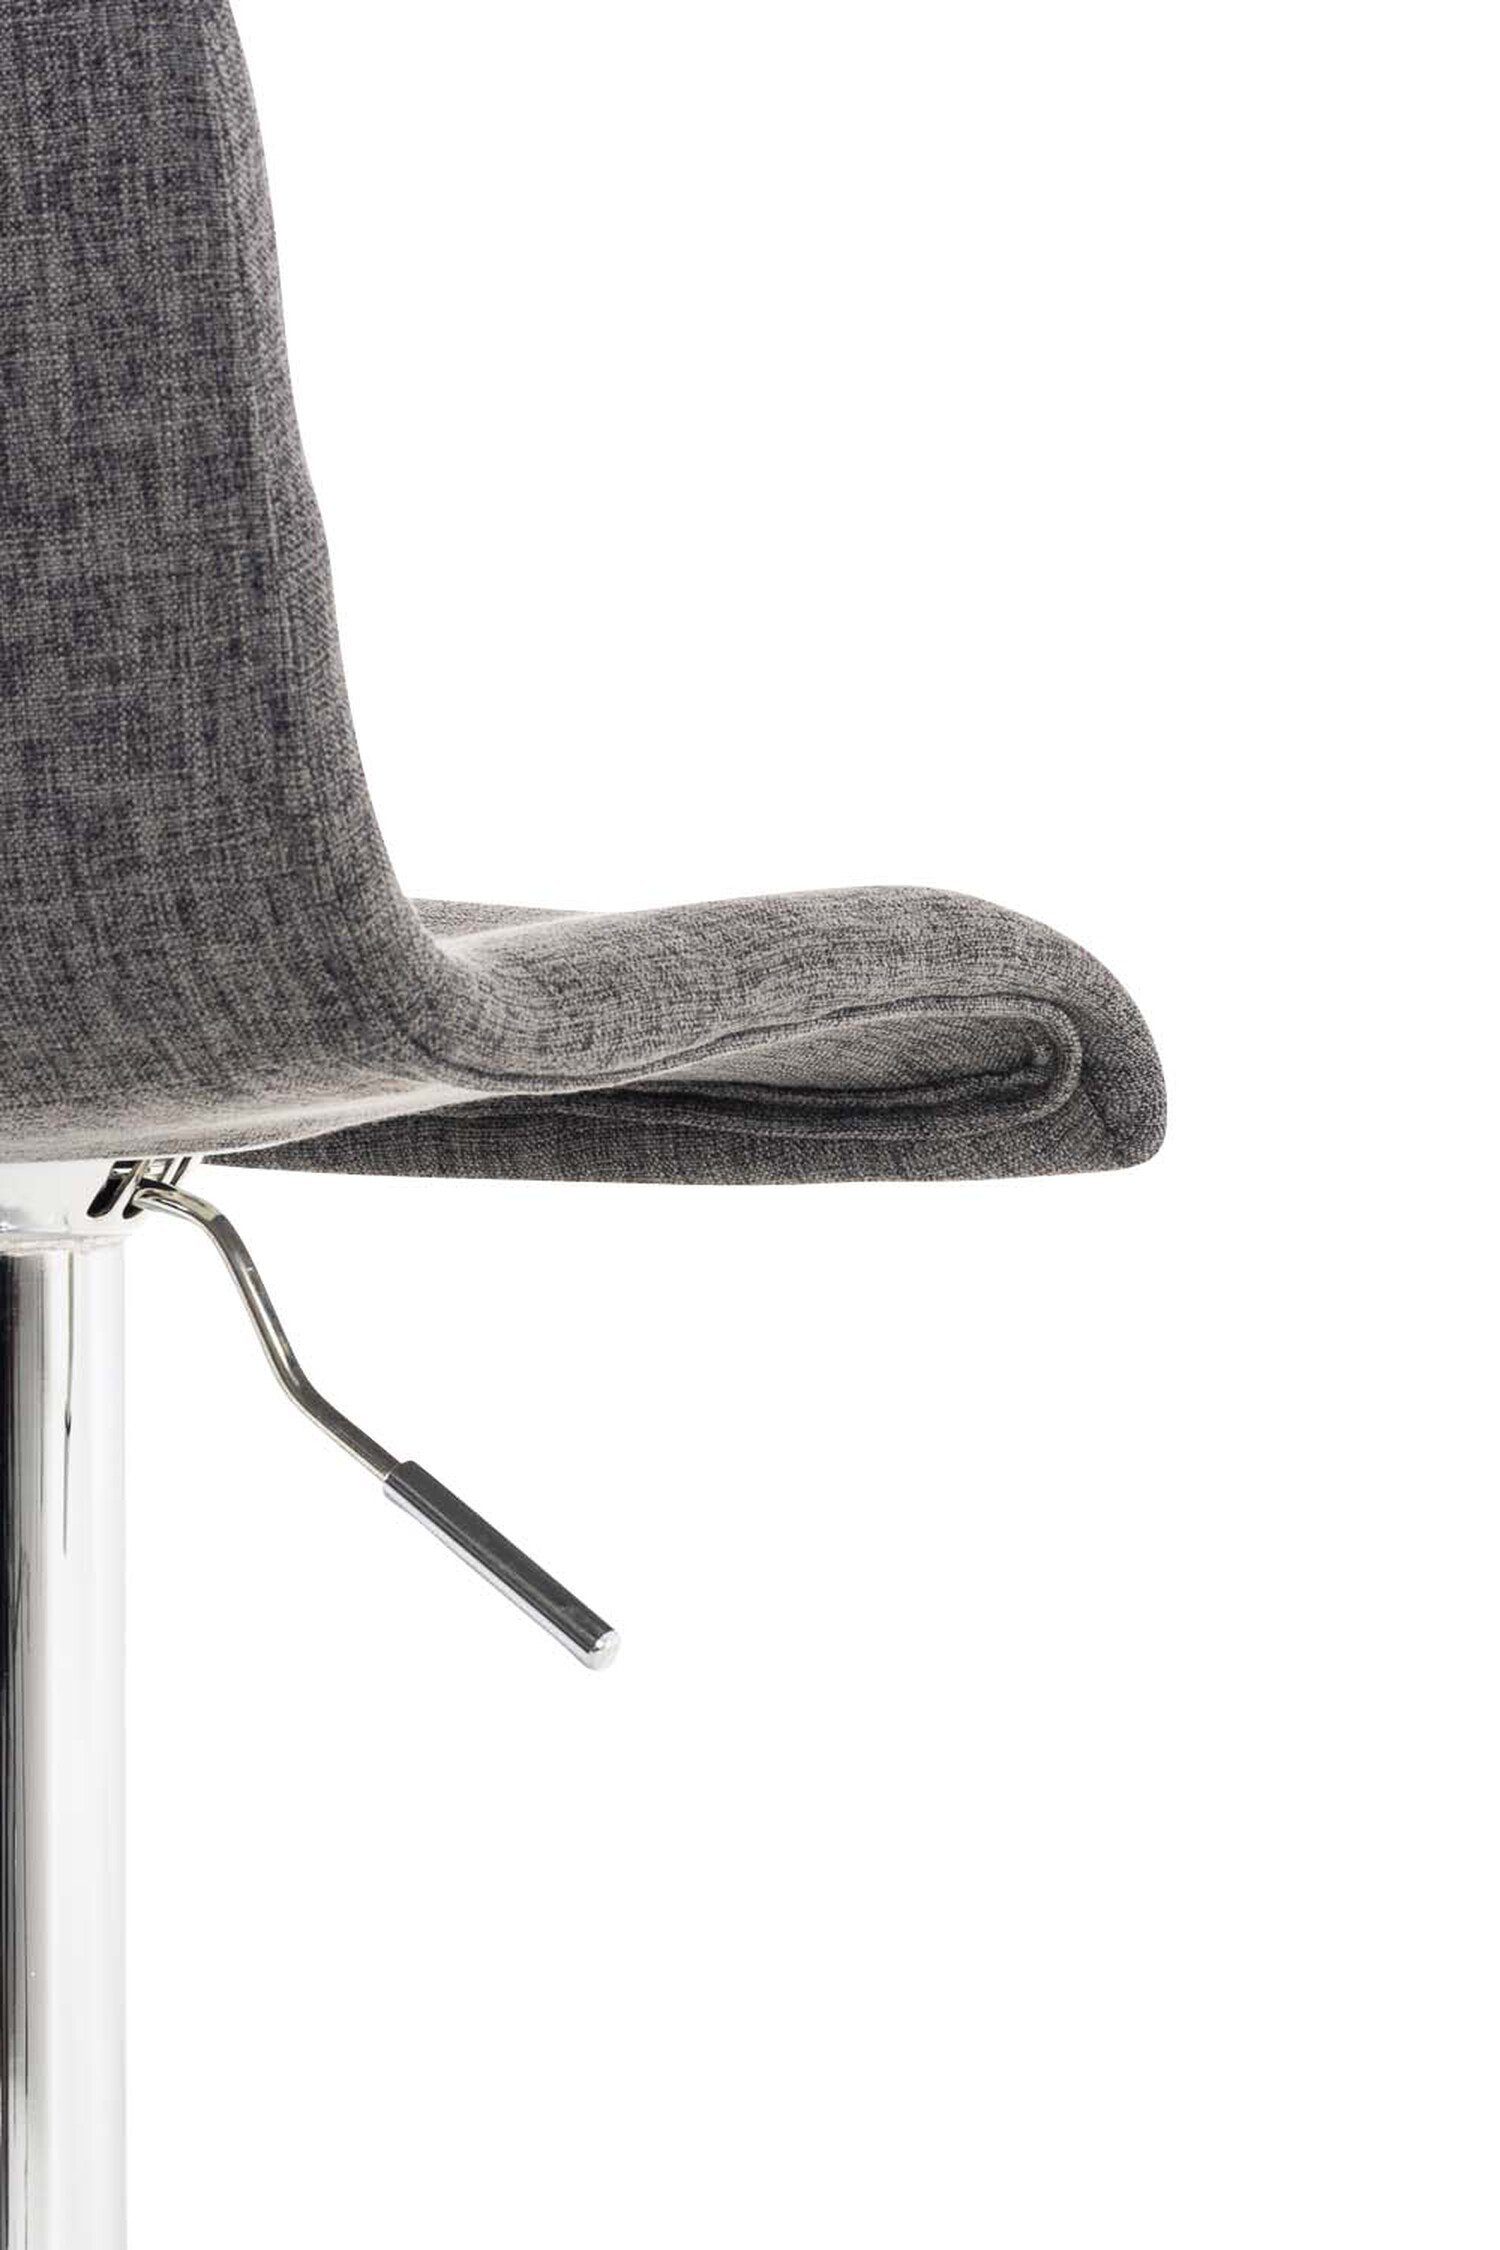 Hellgrau Sitzfläche: Hocker Metall TPFLiving Theke - Gestell Tresenhocker), für Hoover - Chrom & Stoff Fußstütze Barhocker Küche (mit -